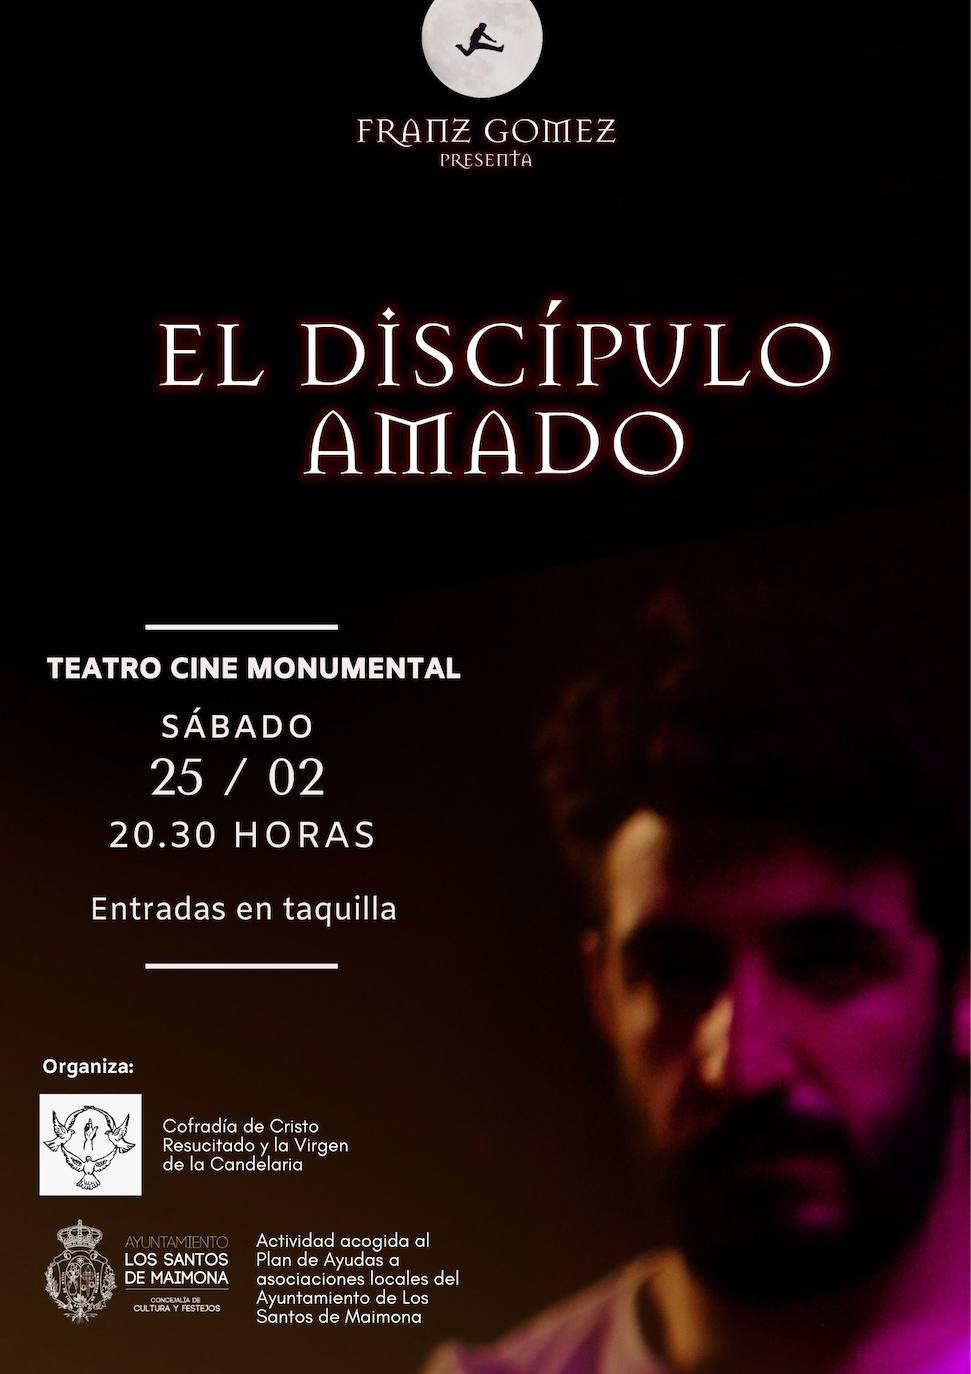 'El Discípulo Amado' traslada la Semana Santa al Teatro Cine Monumental